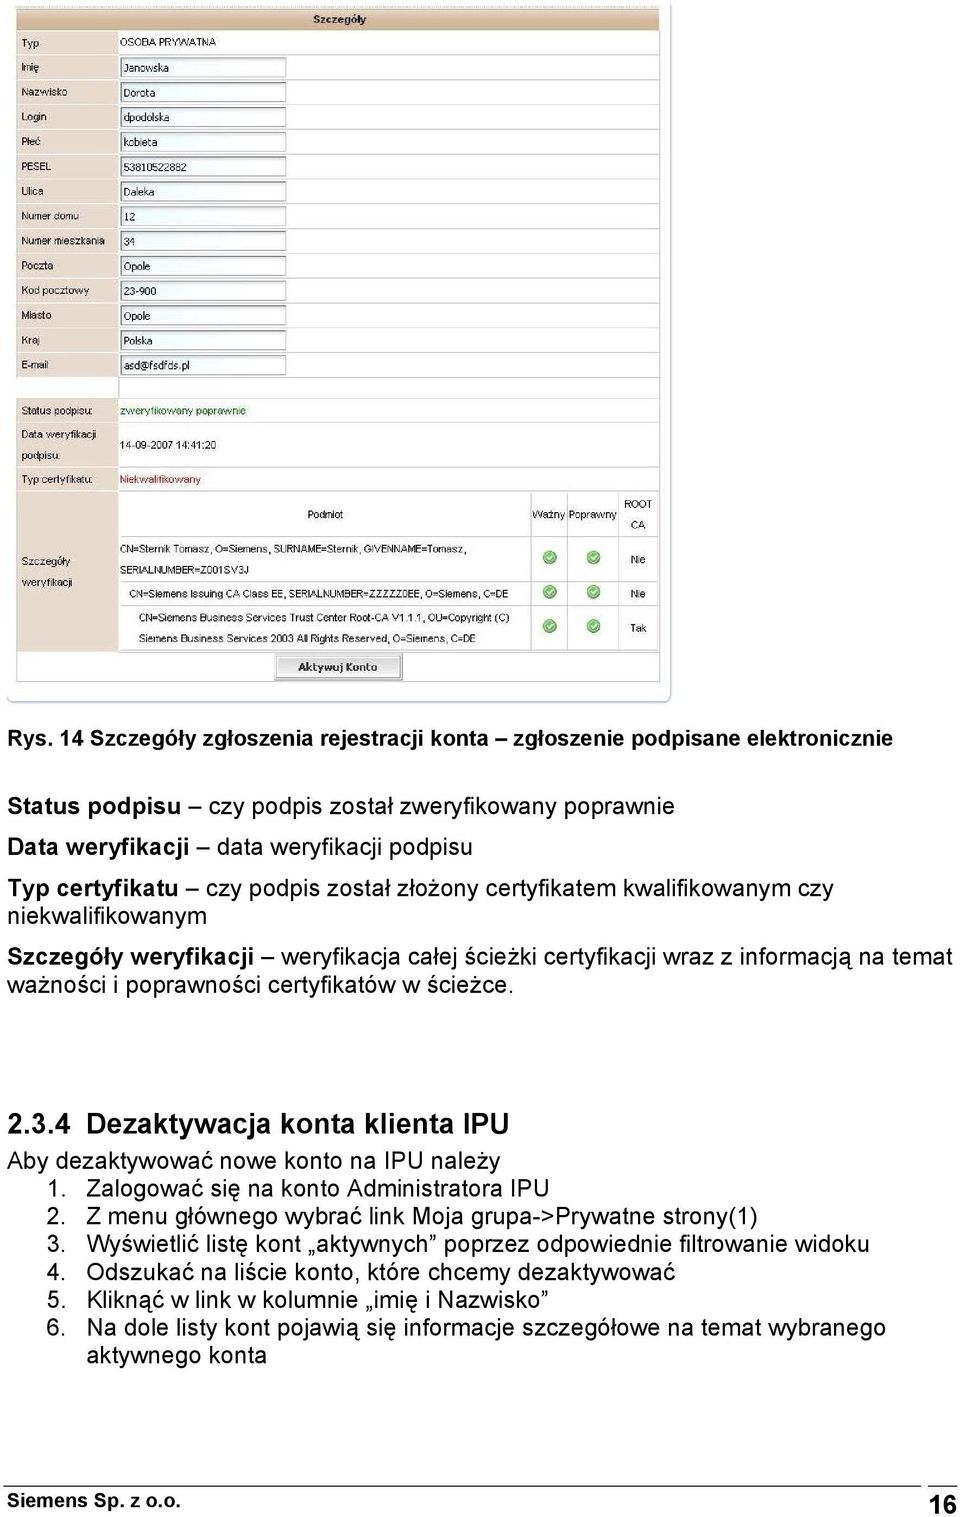 w ścieżce. 2.3.4 Dezaktywacja konta klienta IPU Aby dezaktywować nowe konto na IPU należy 1. Zalogować się na konto Administratora IPU 2. Z menu głównego wybrać link Moja grupa->prywatne strony(1) 3.